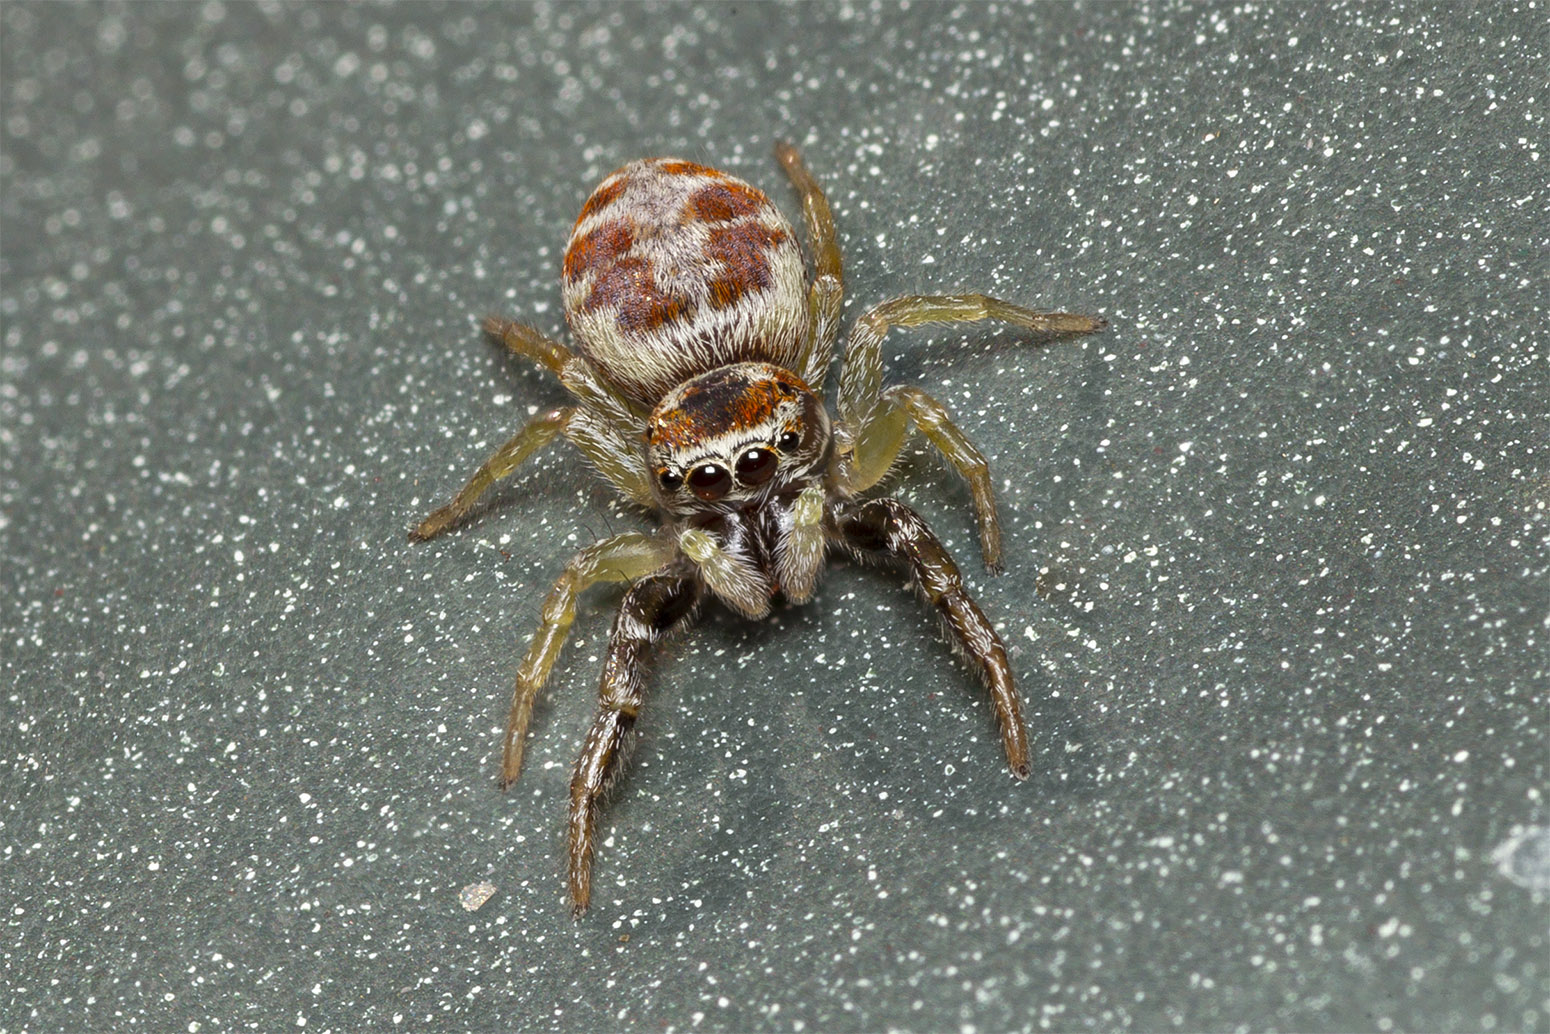 Here's my spider friend...